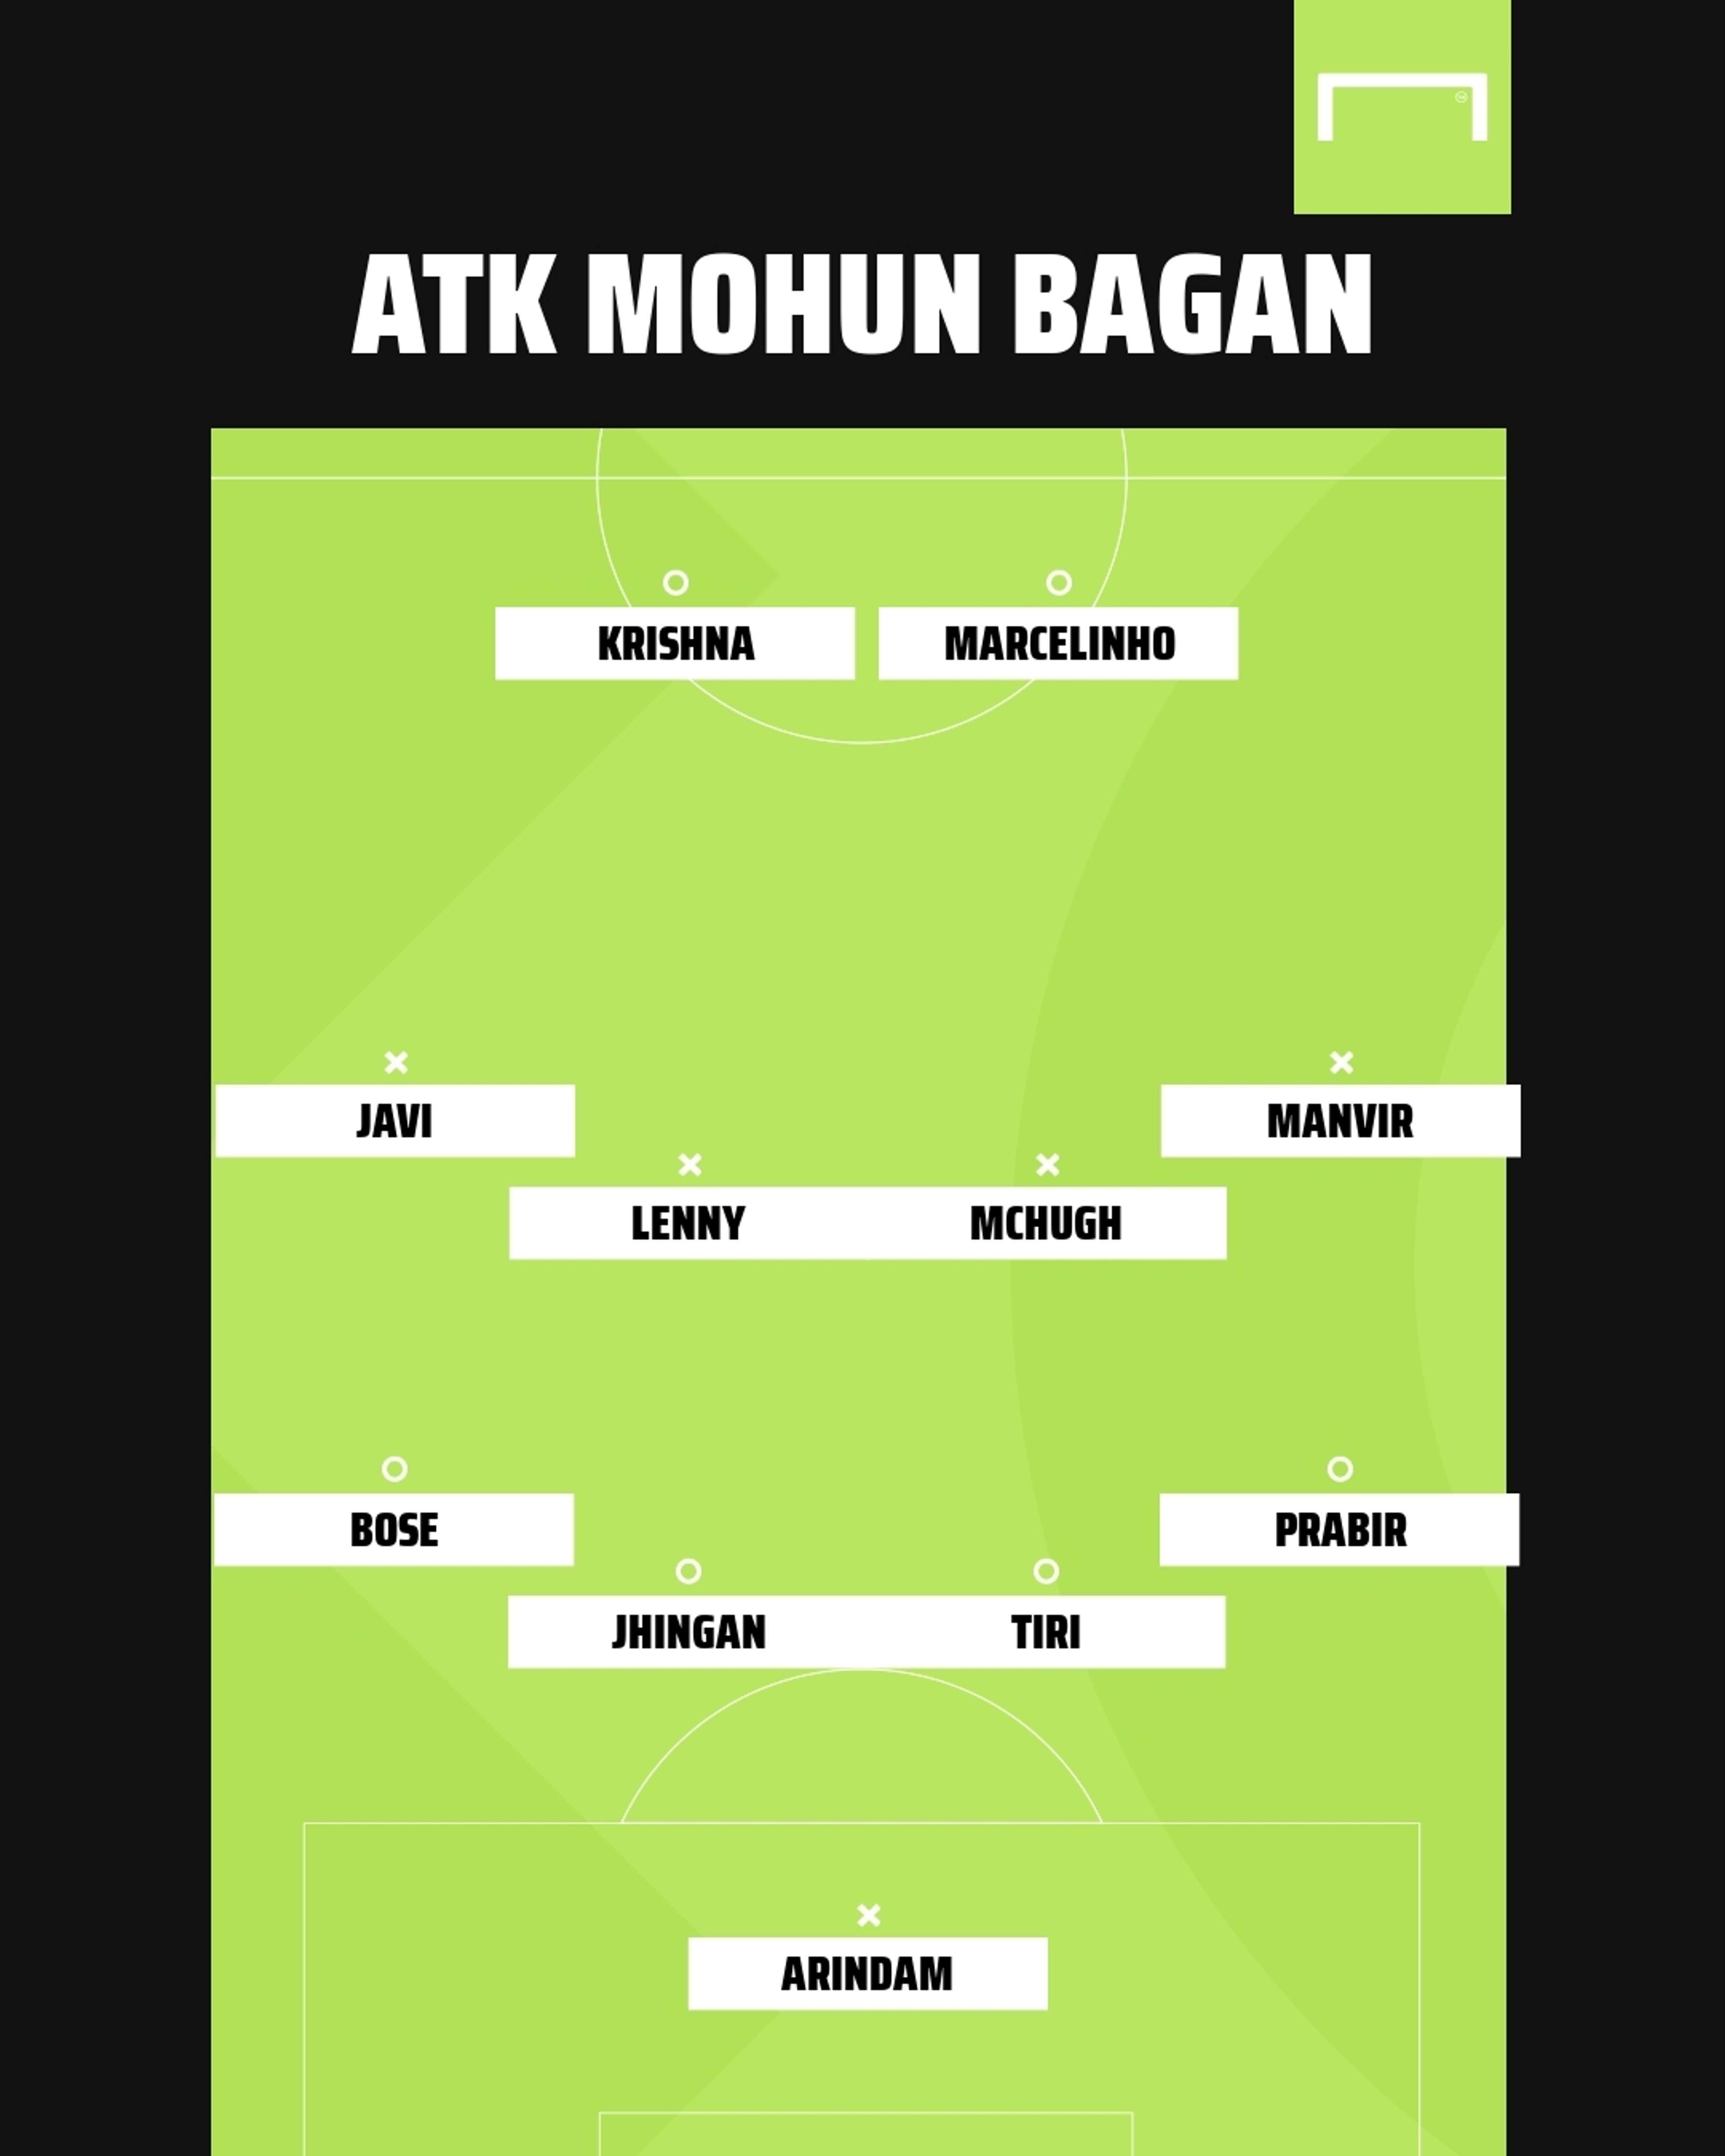 ATK Mohun Bagan possible XI